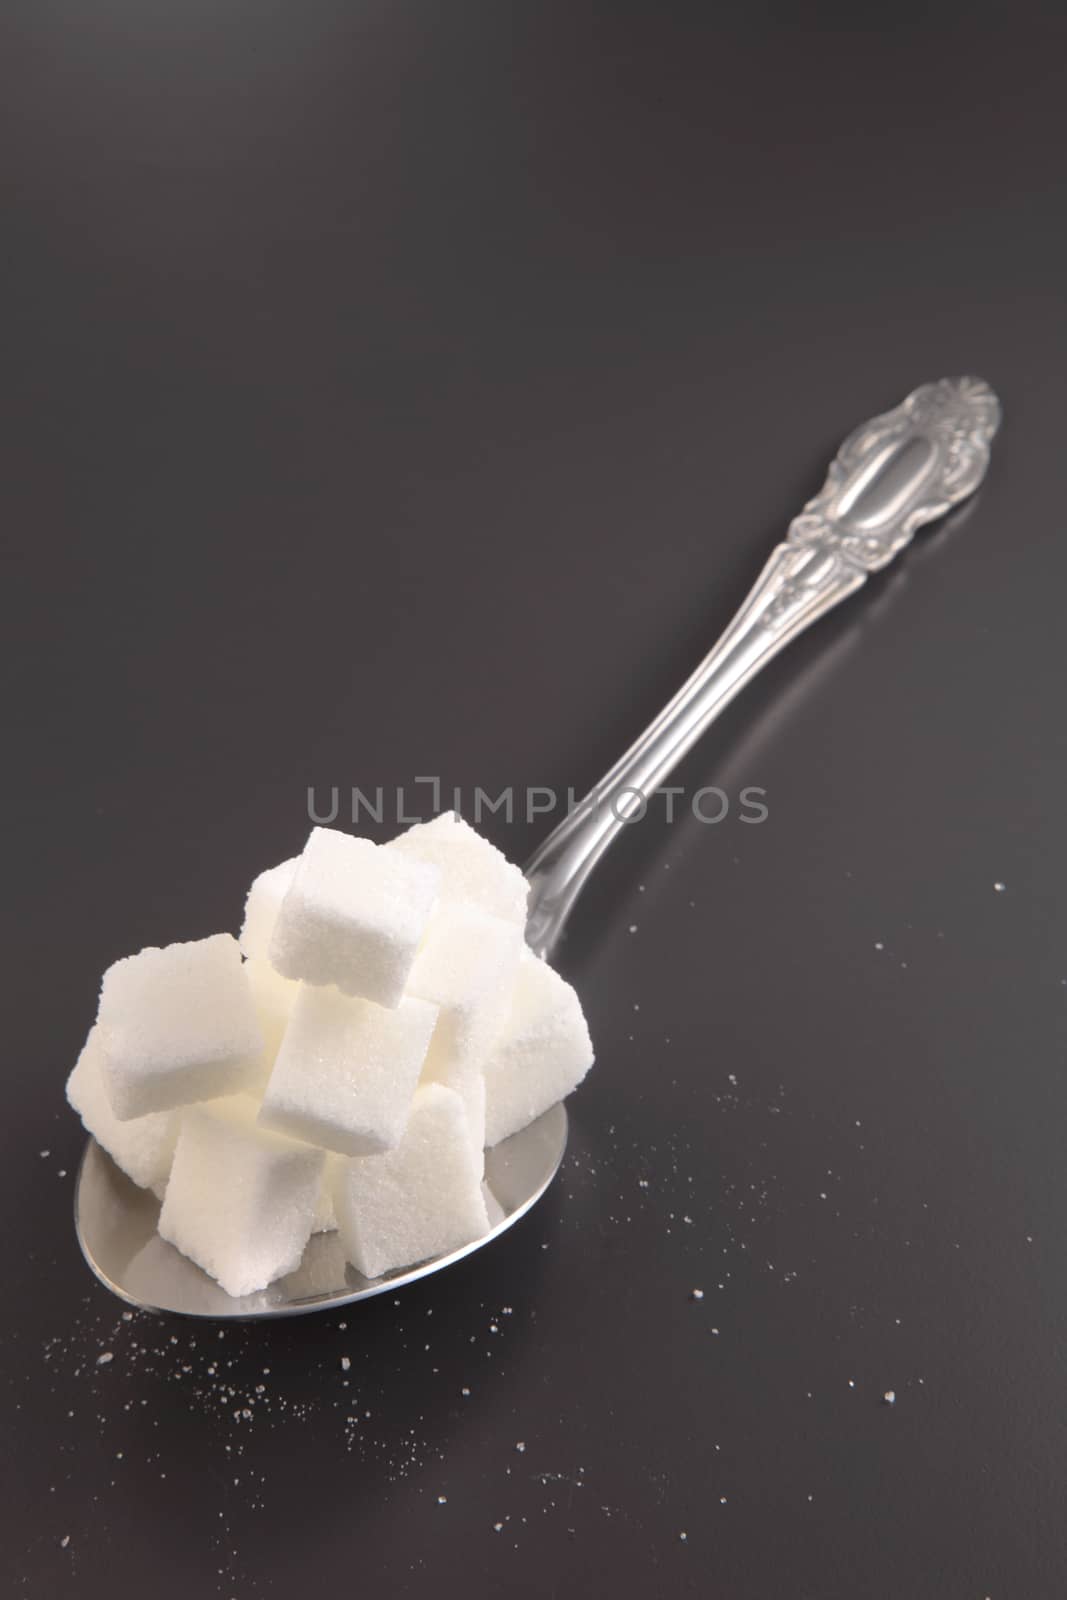 giant spoon with cube sugar by eskaylim